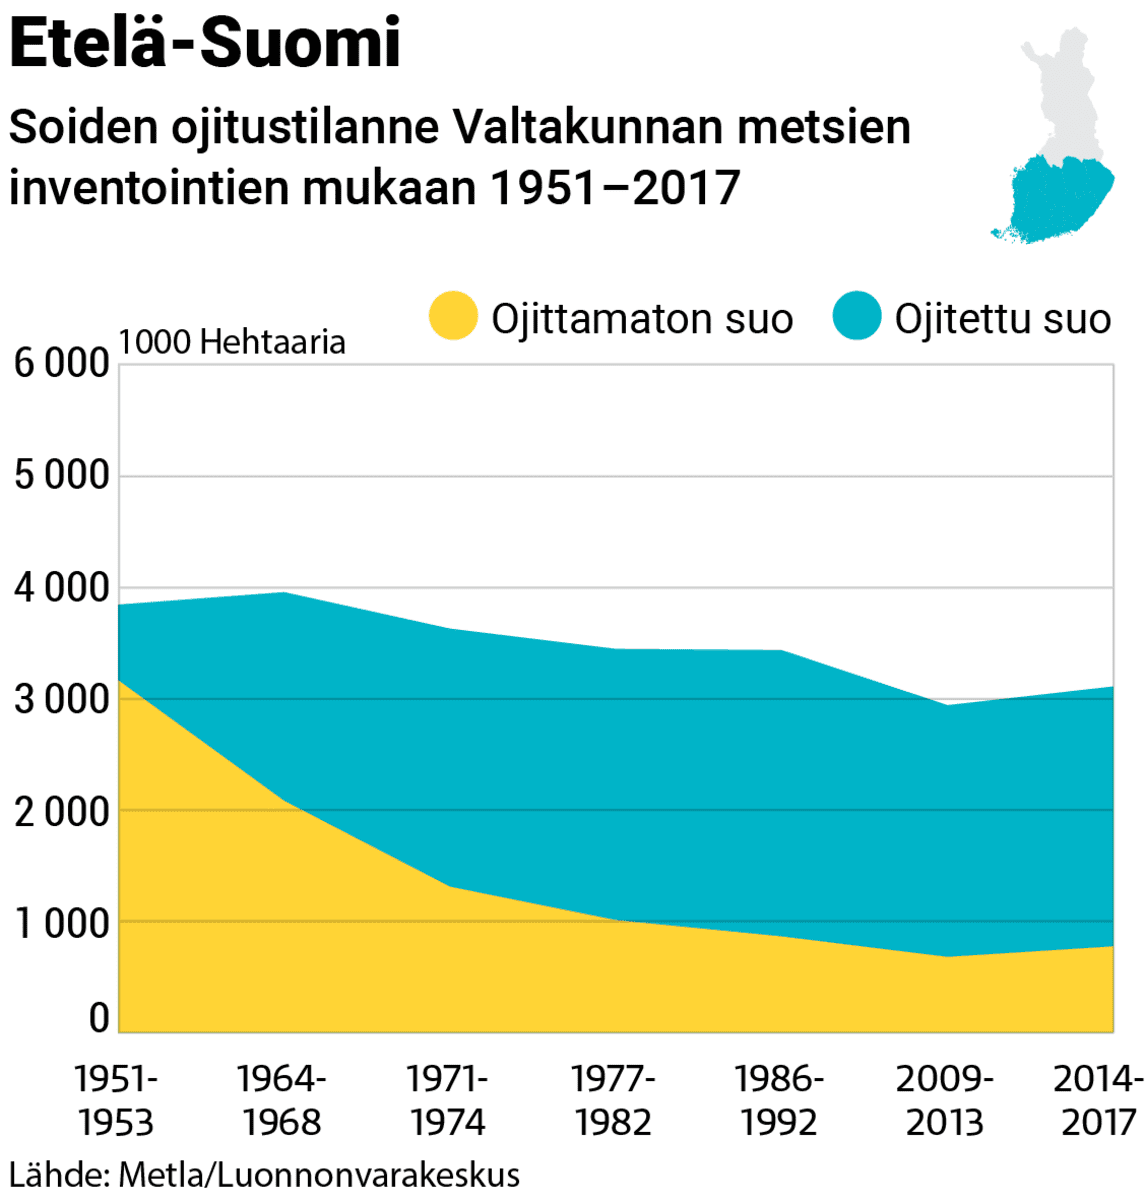 Grafiikka soiden ojitustilanteesta Etelä-Suomessa 1951-2017